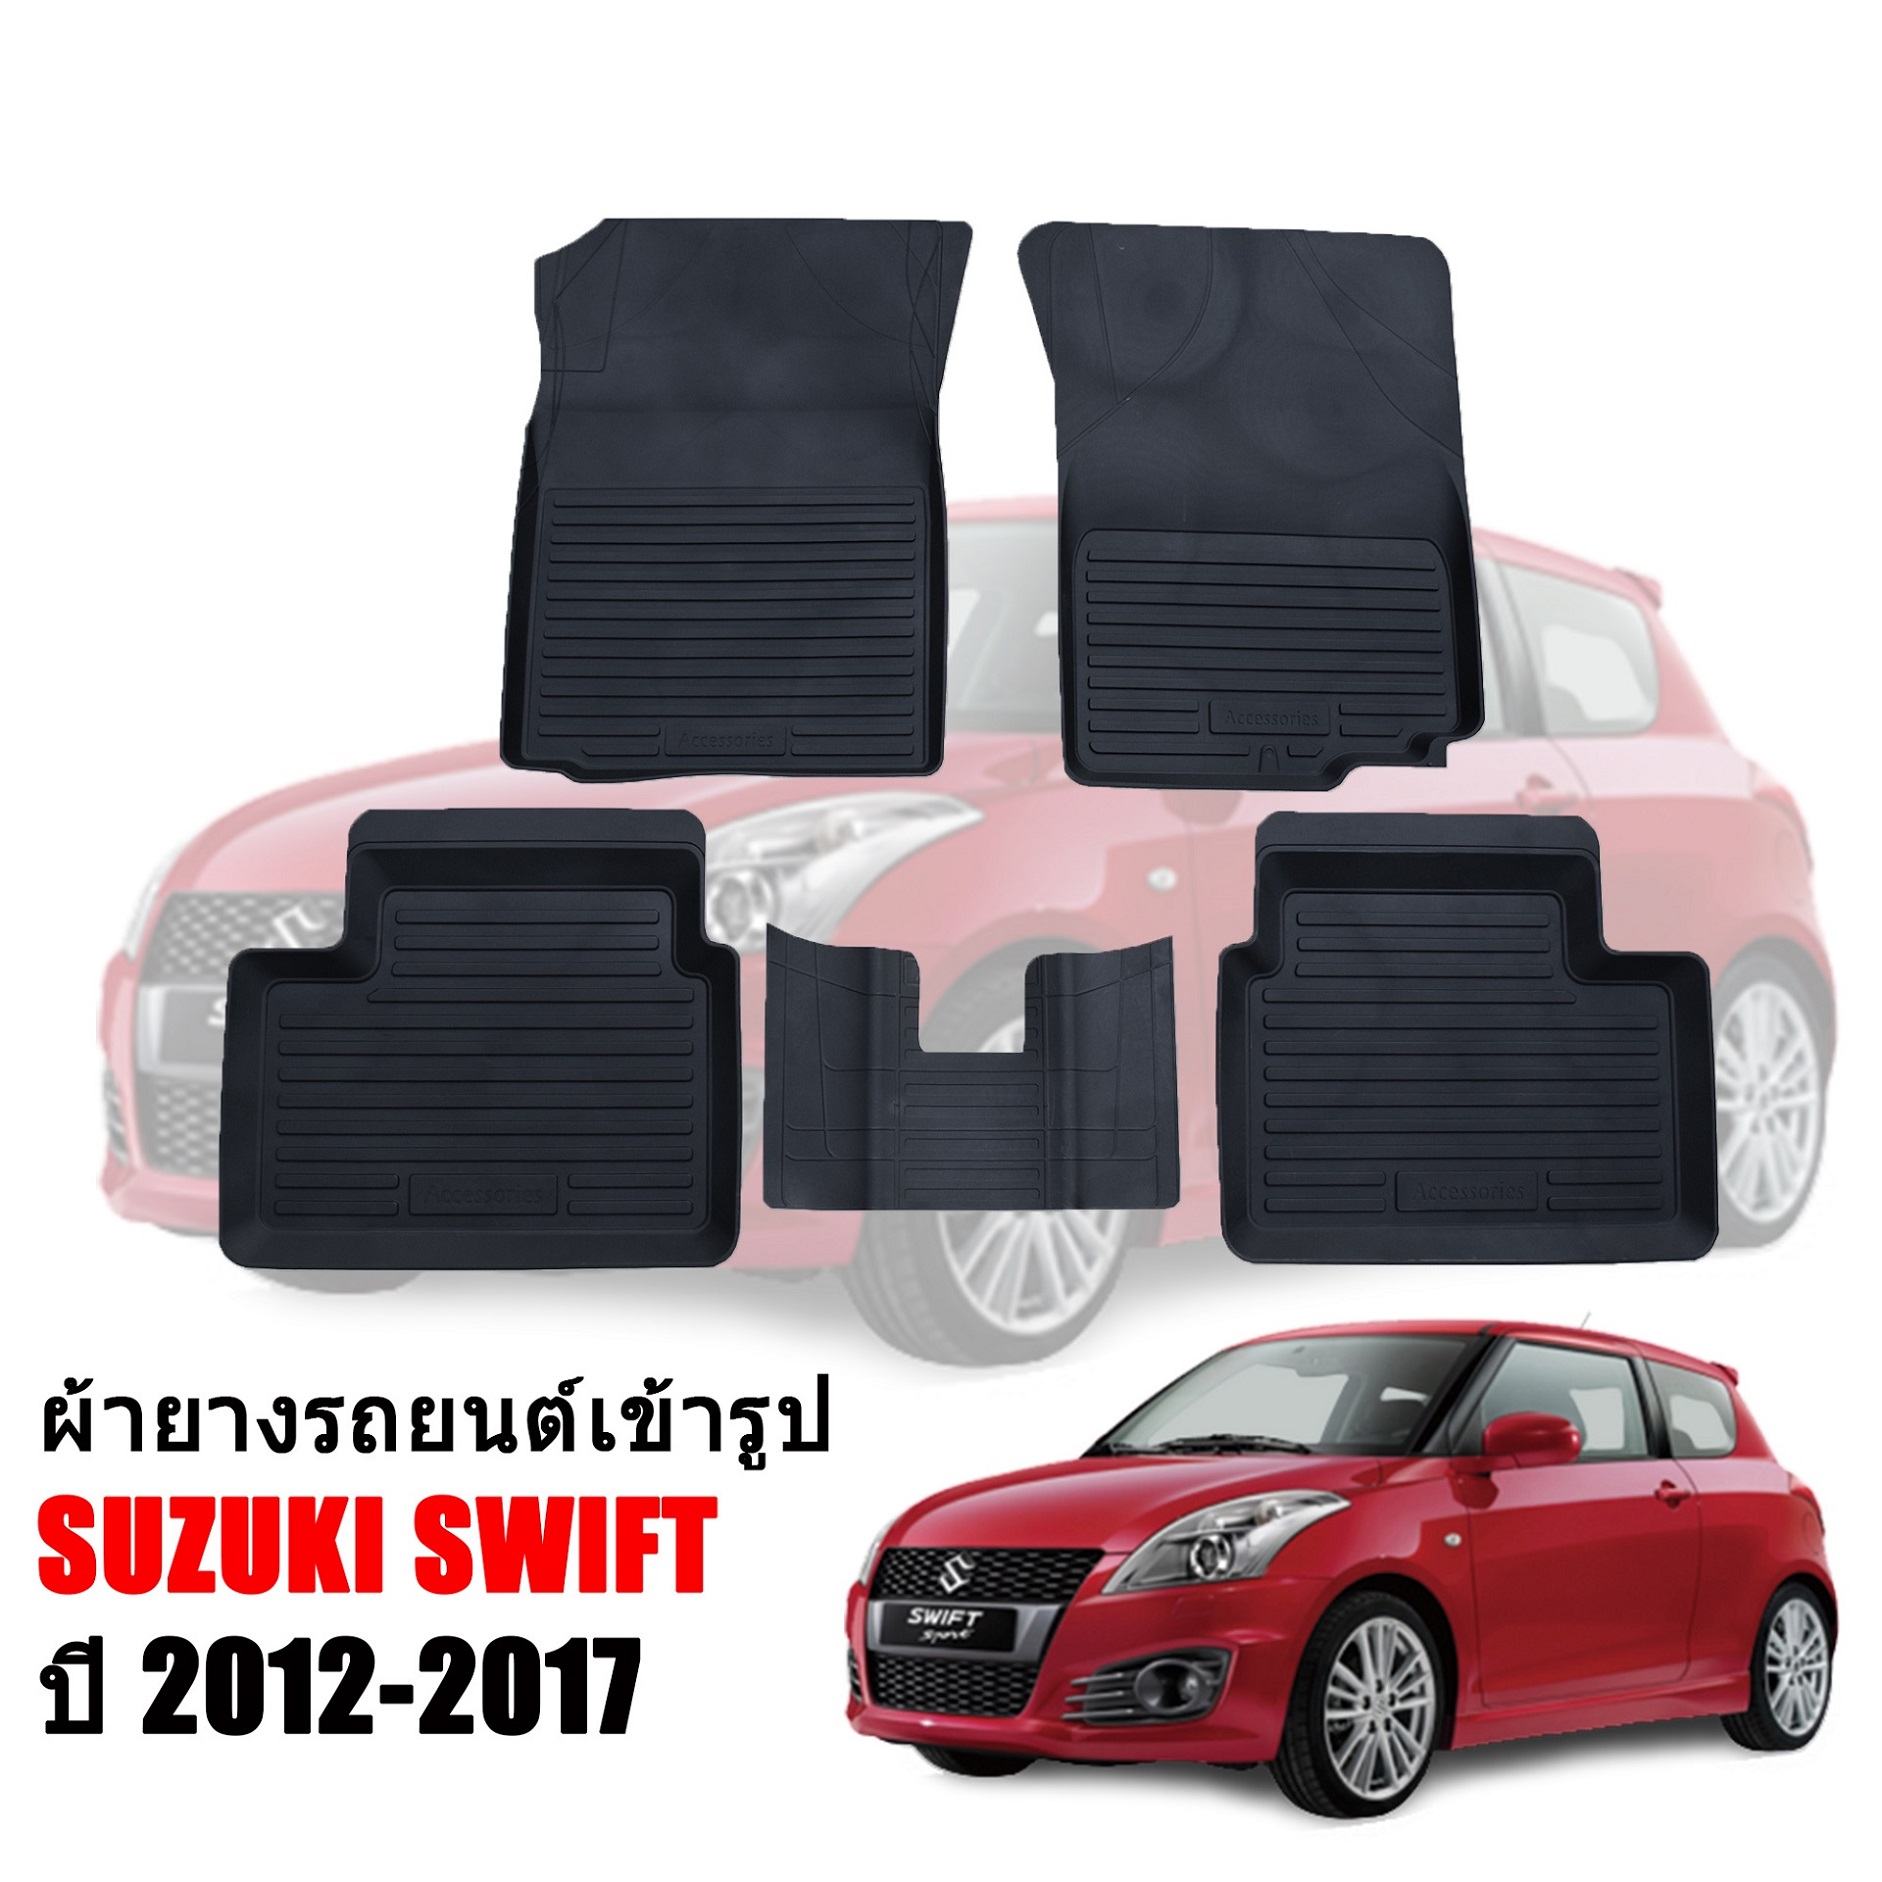 ผ้ายางรถยนต์เข้ารูป SUZUKI SWIFT ปี 2012-2017(ก่อนโฉมปัจจุบัน) พรมปูพื้นรถ ผ้ายางปูพื้นรถ ถาดยางปูพื้นรถ พรมปูรถยนต์ ผ้ายางปูพื้น พรมรถยนต์ พรม